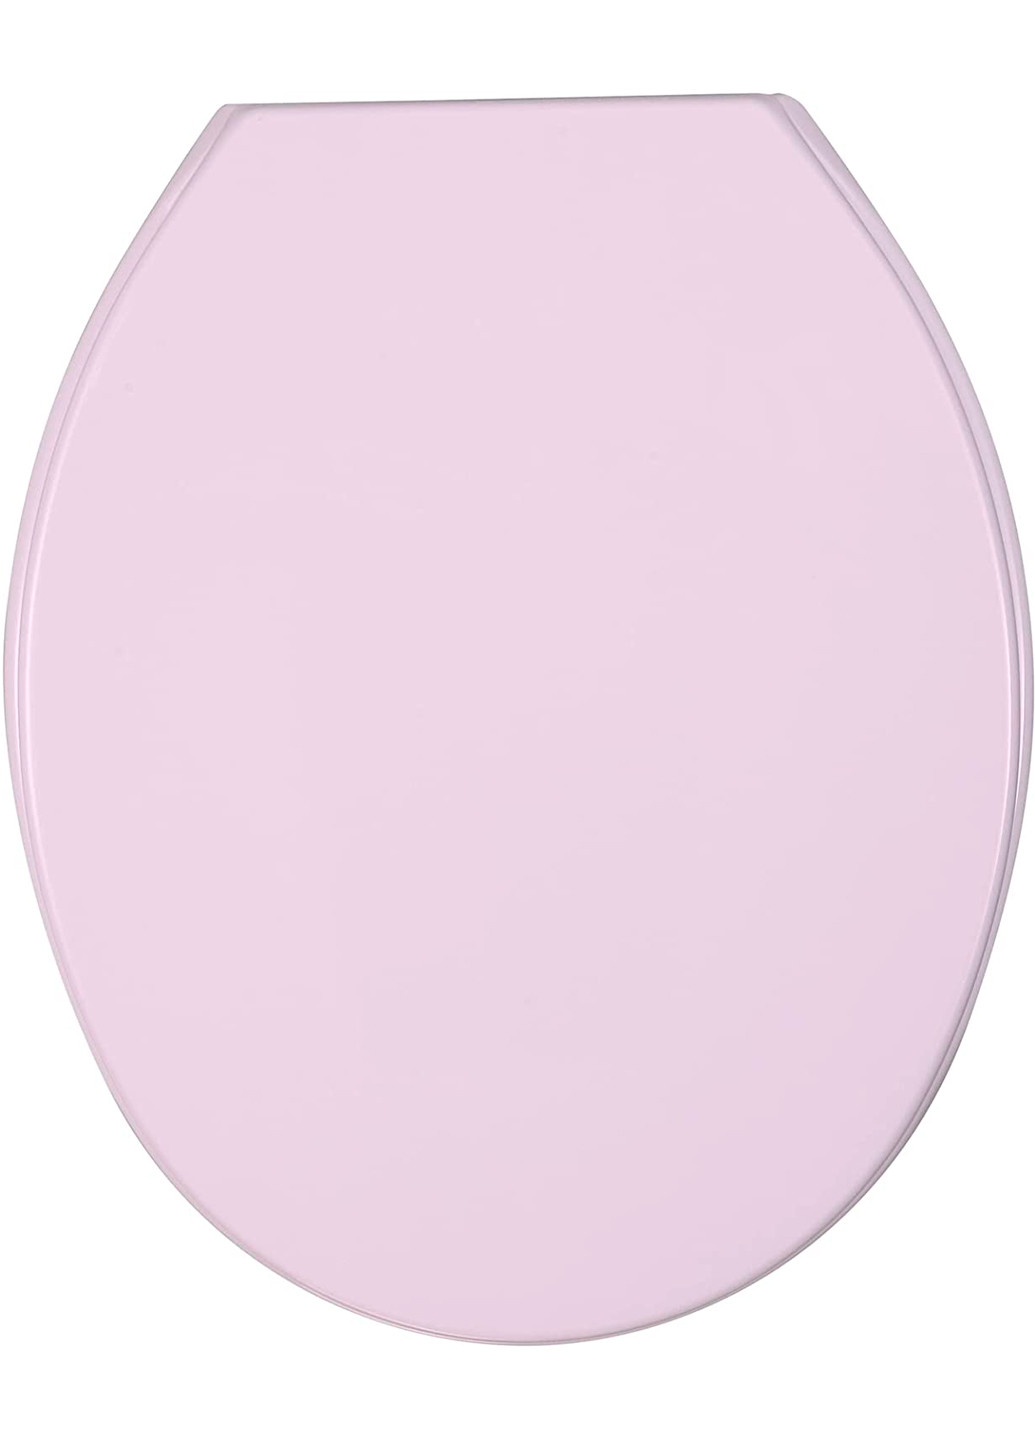 Сидения для унитаза, термопласт, розовый Wenko allstar cetona (258849284)